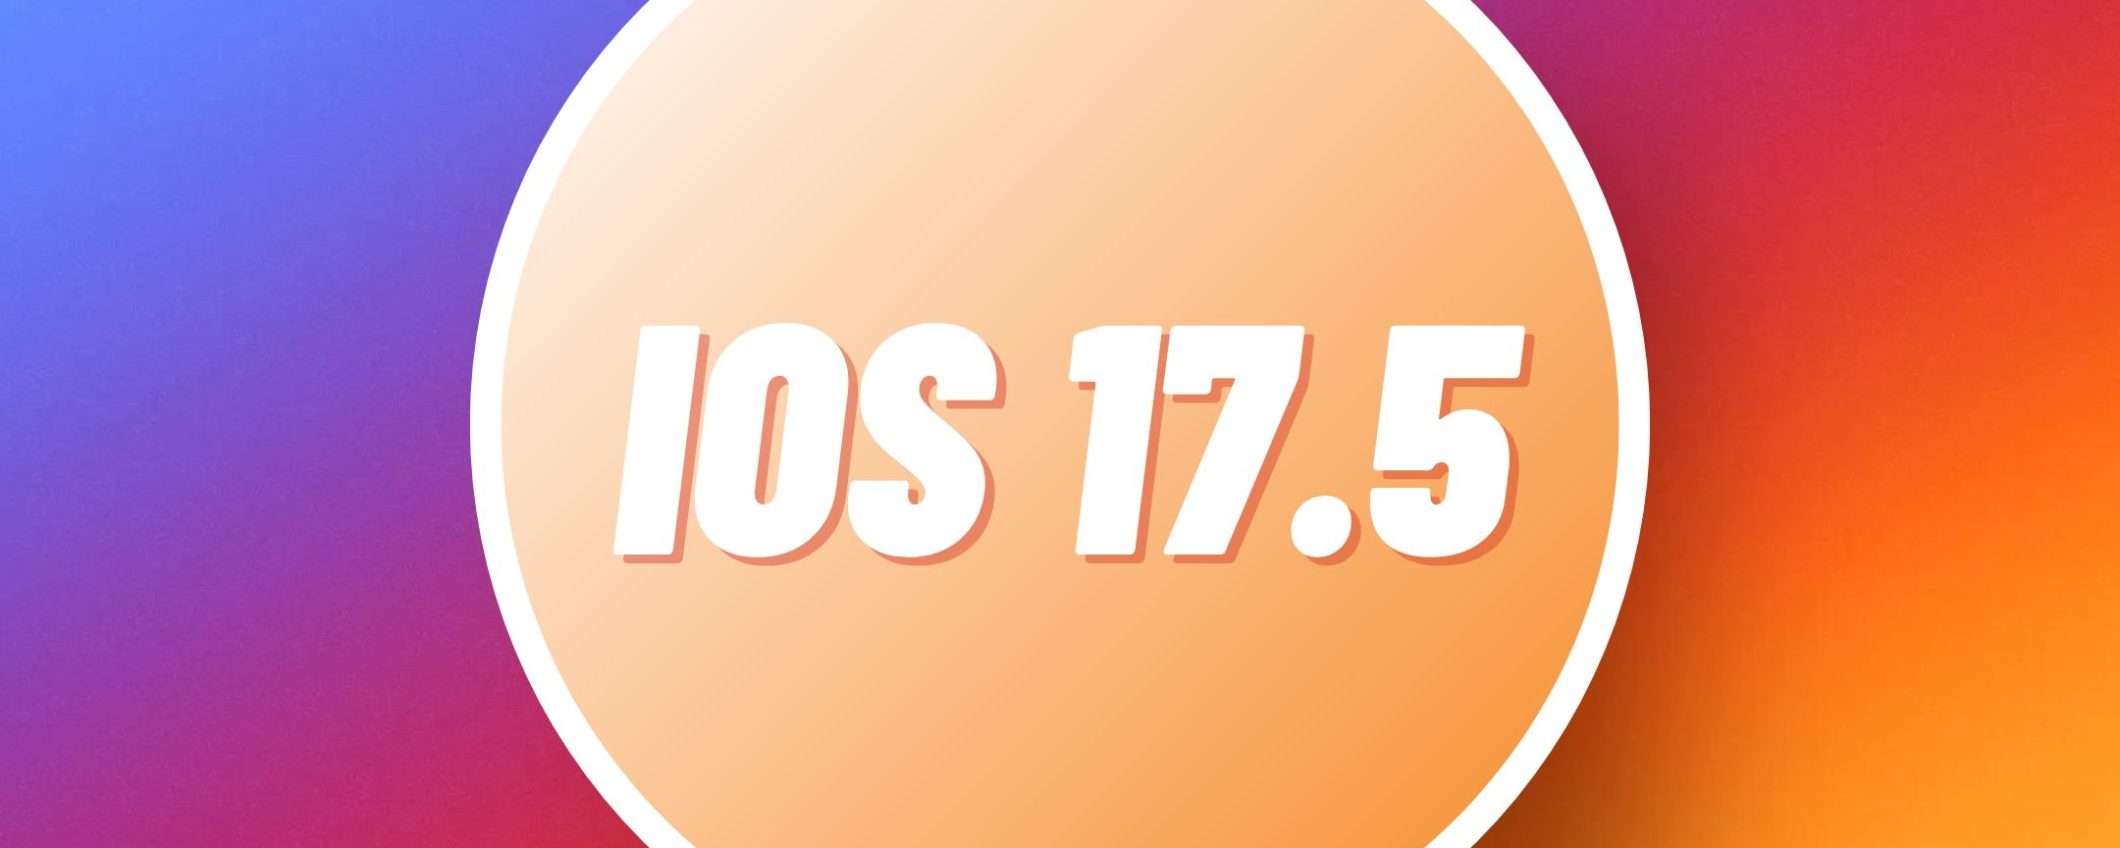 Apple aggiorna i suoi iPhone: arriva la beta pubblica di iOS 17.5